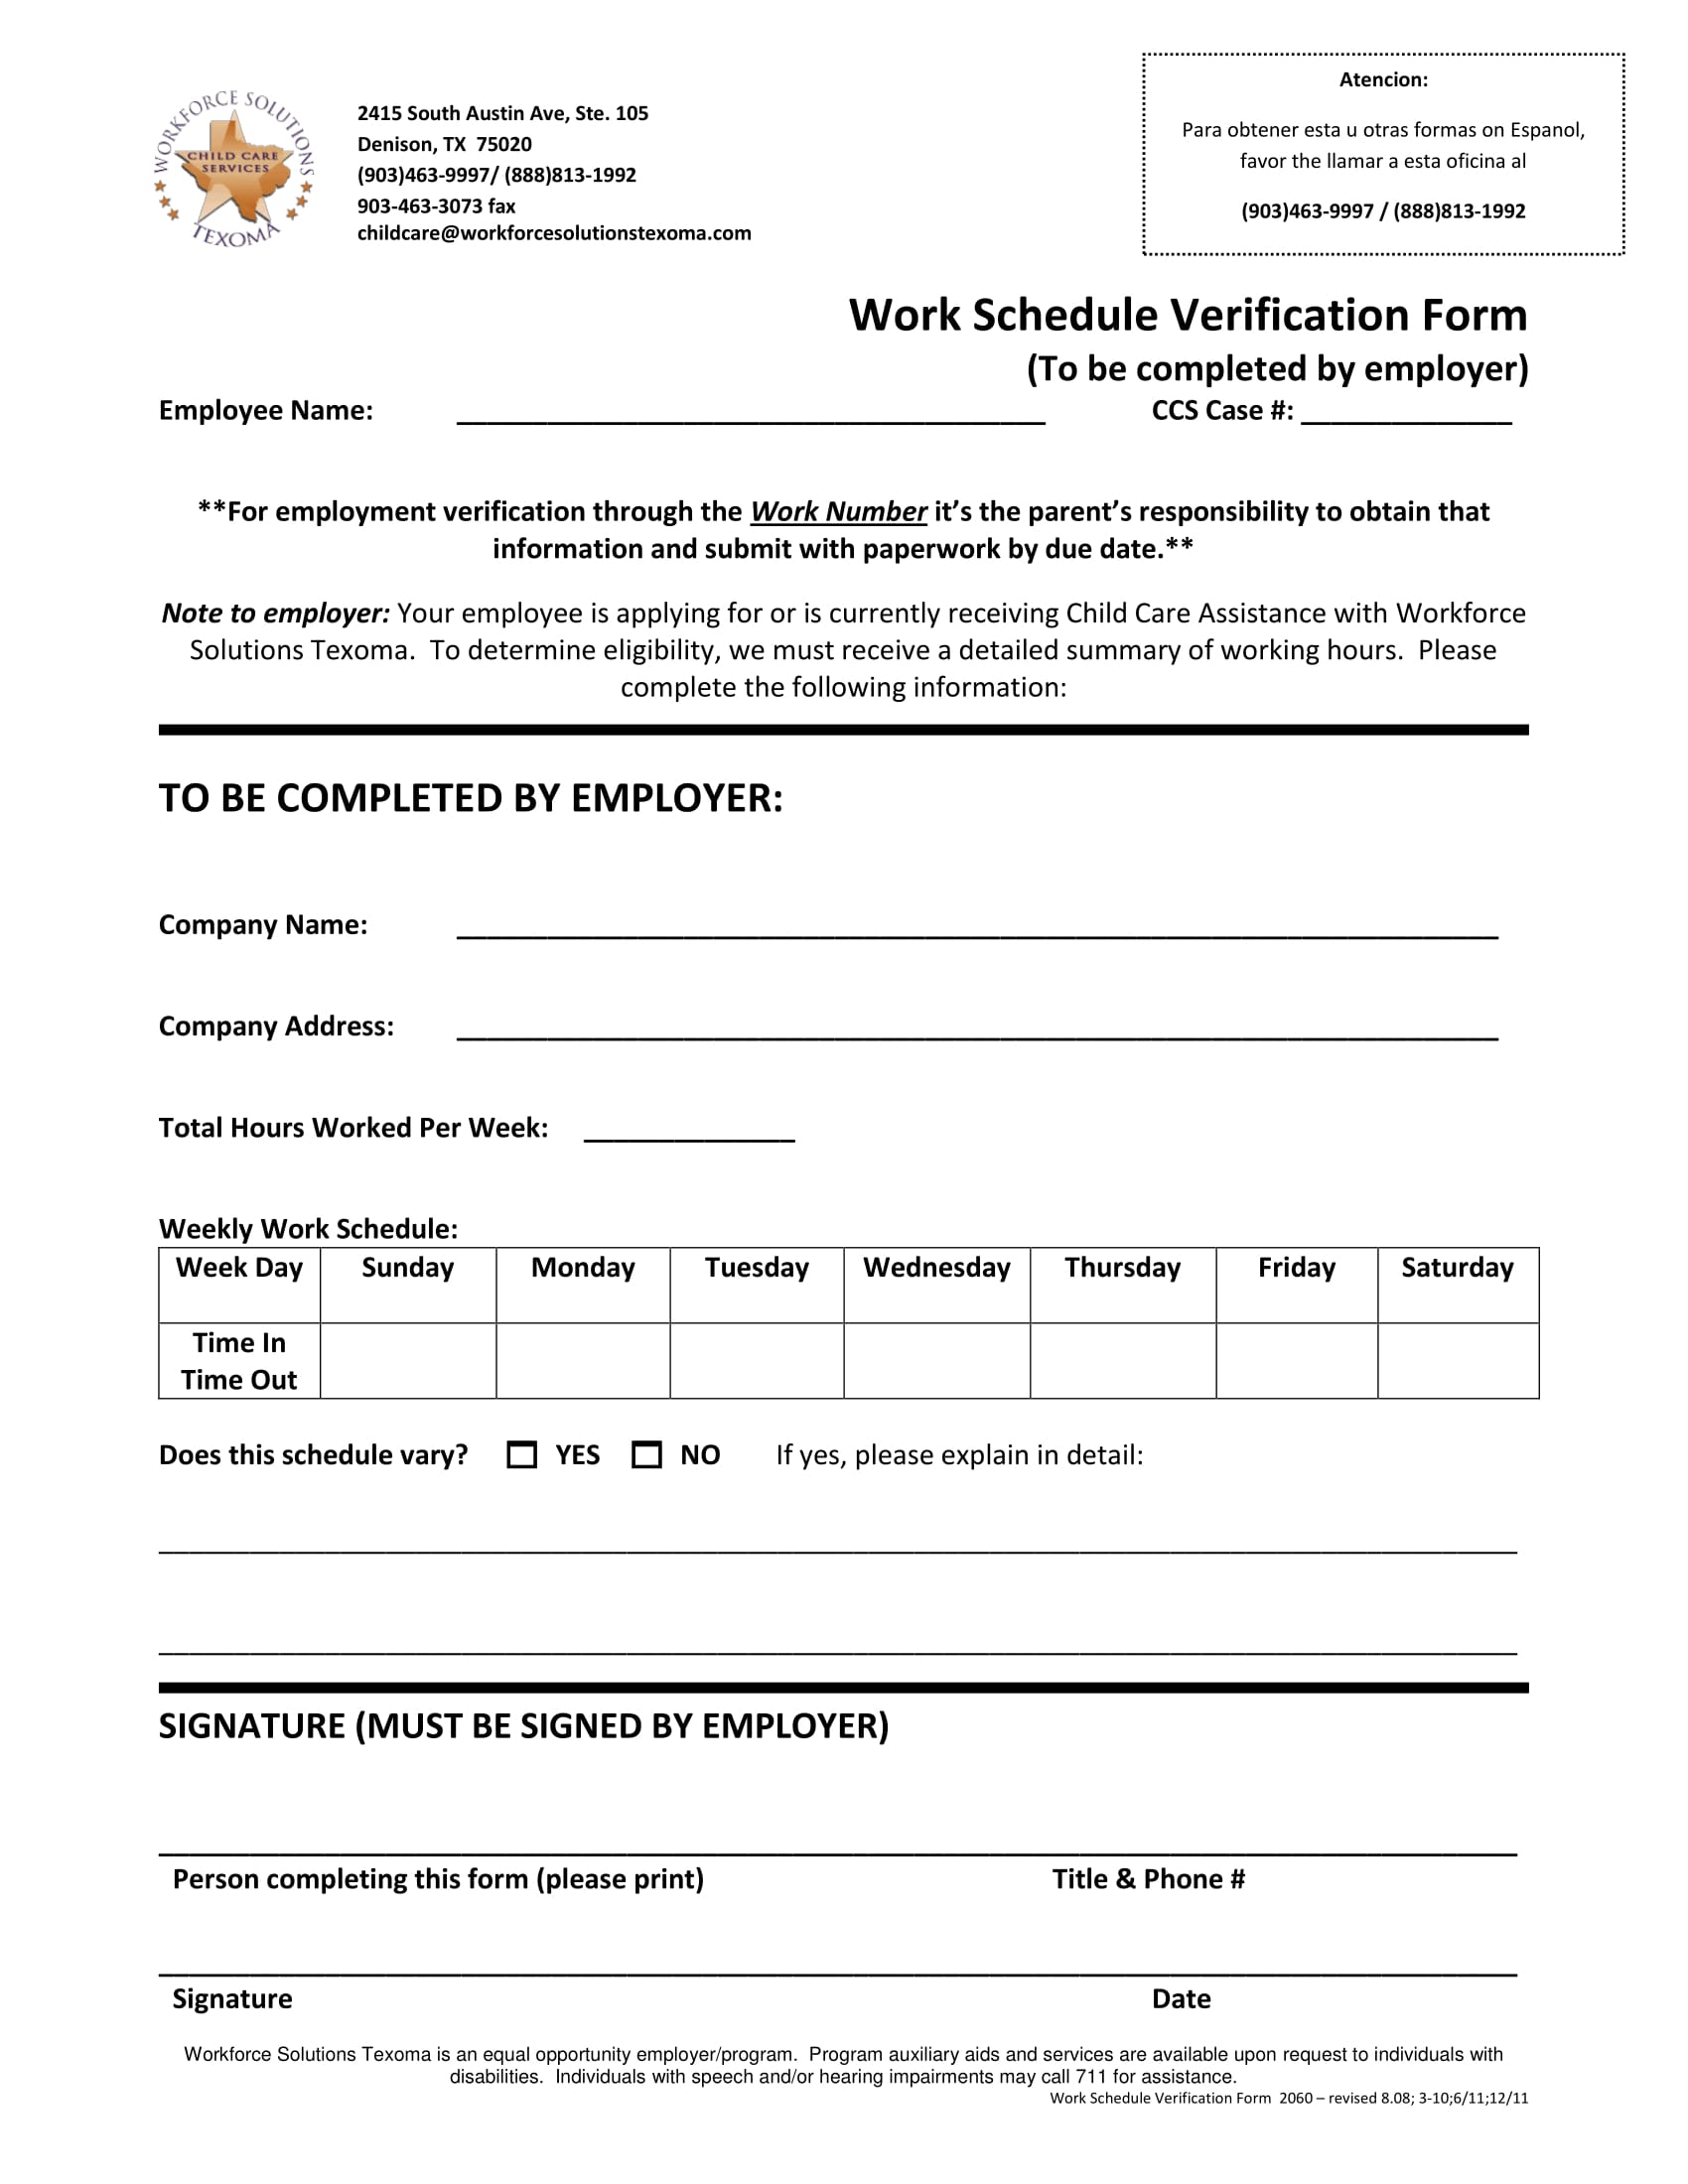 work schedule verification form 1